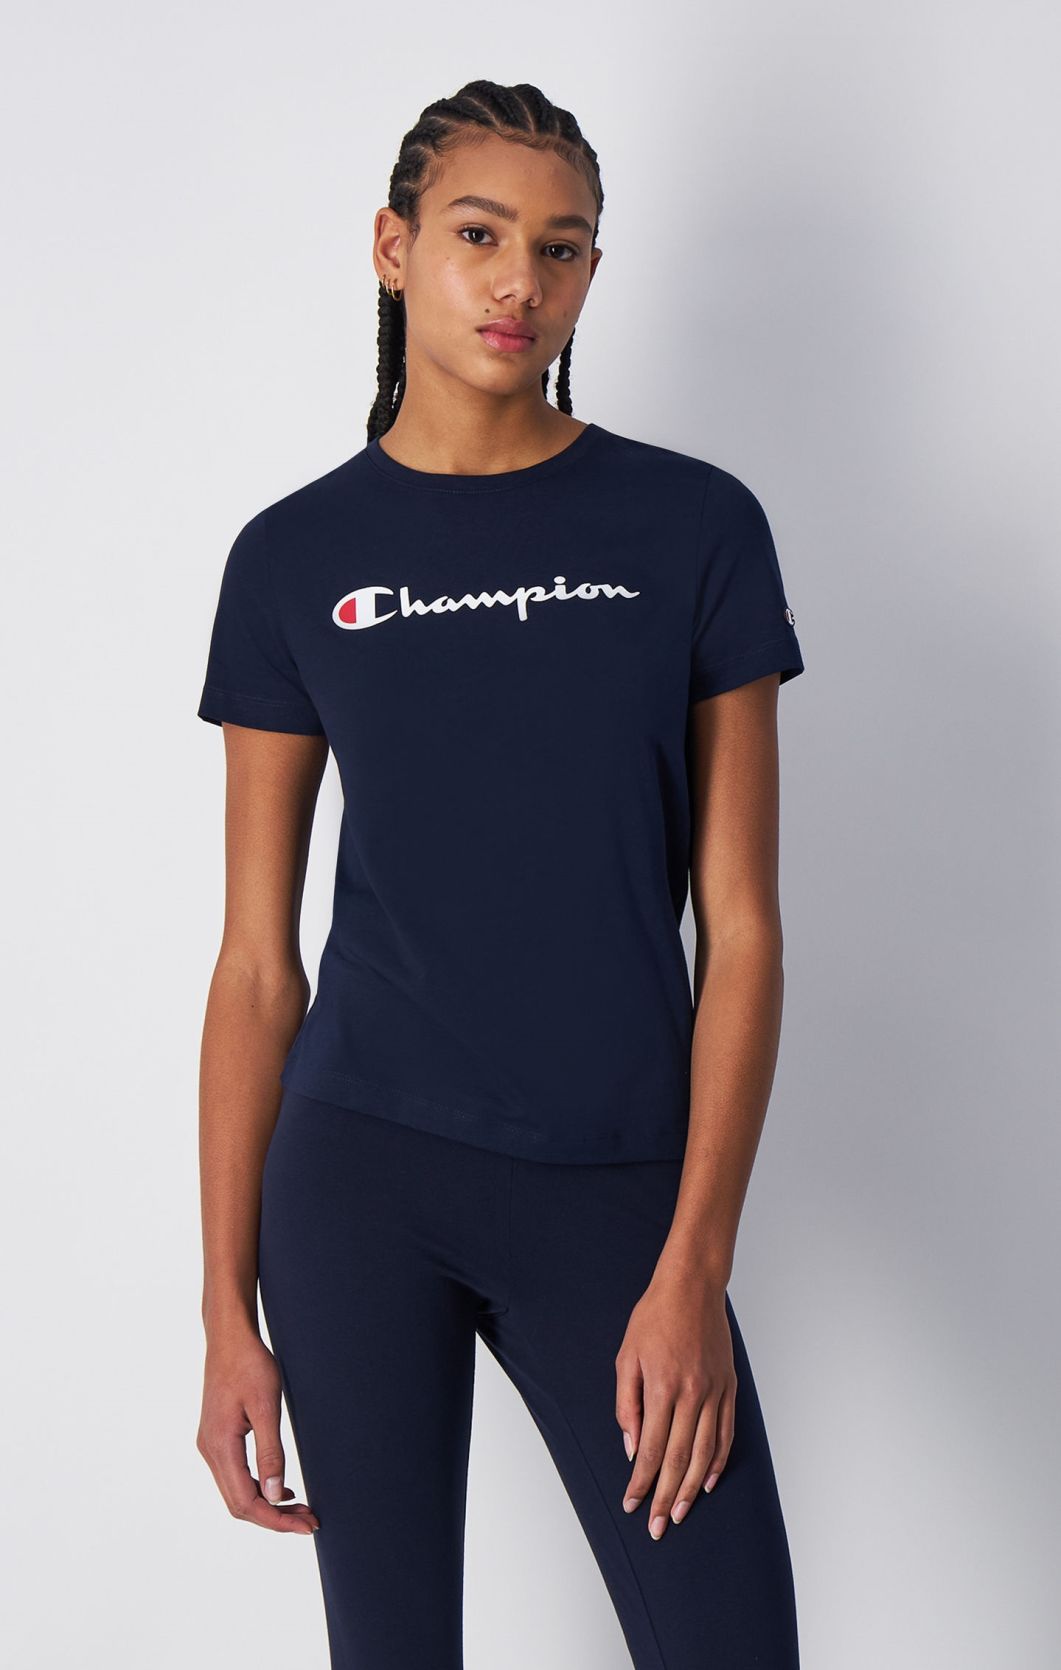 Rundhals-T-Shirt mit großem Champion-Logo | Champion Deutschland | T-Shirts